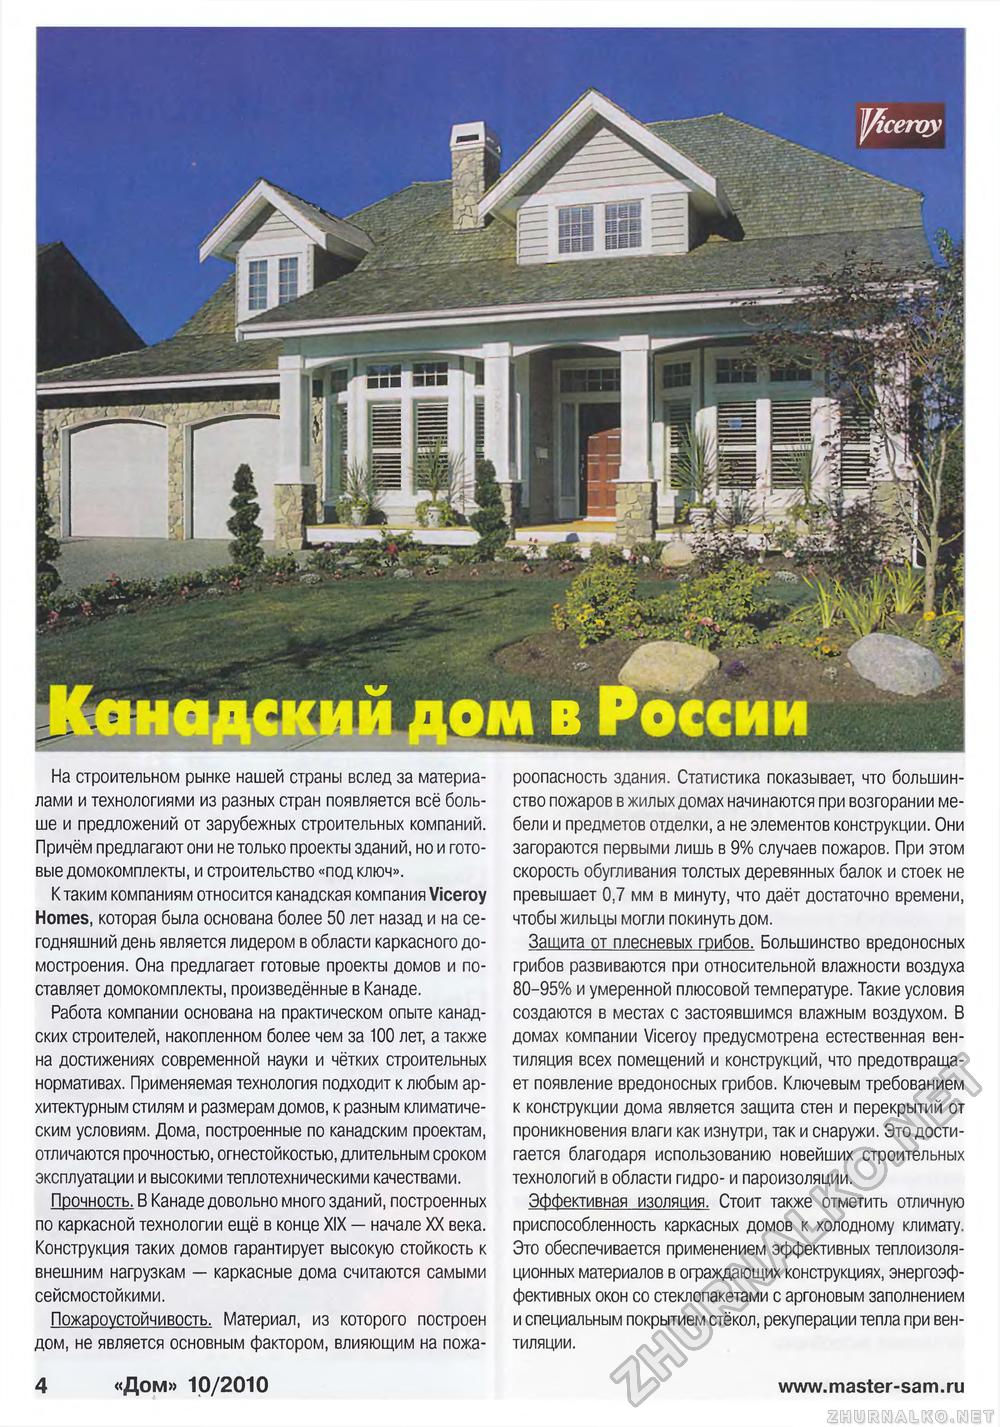 Дом 2010-10, страница 4